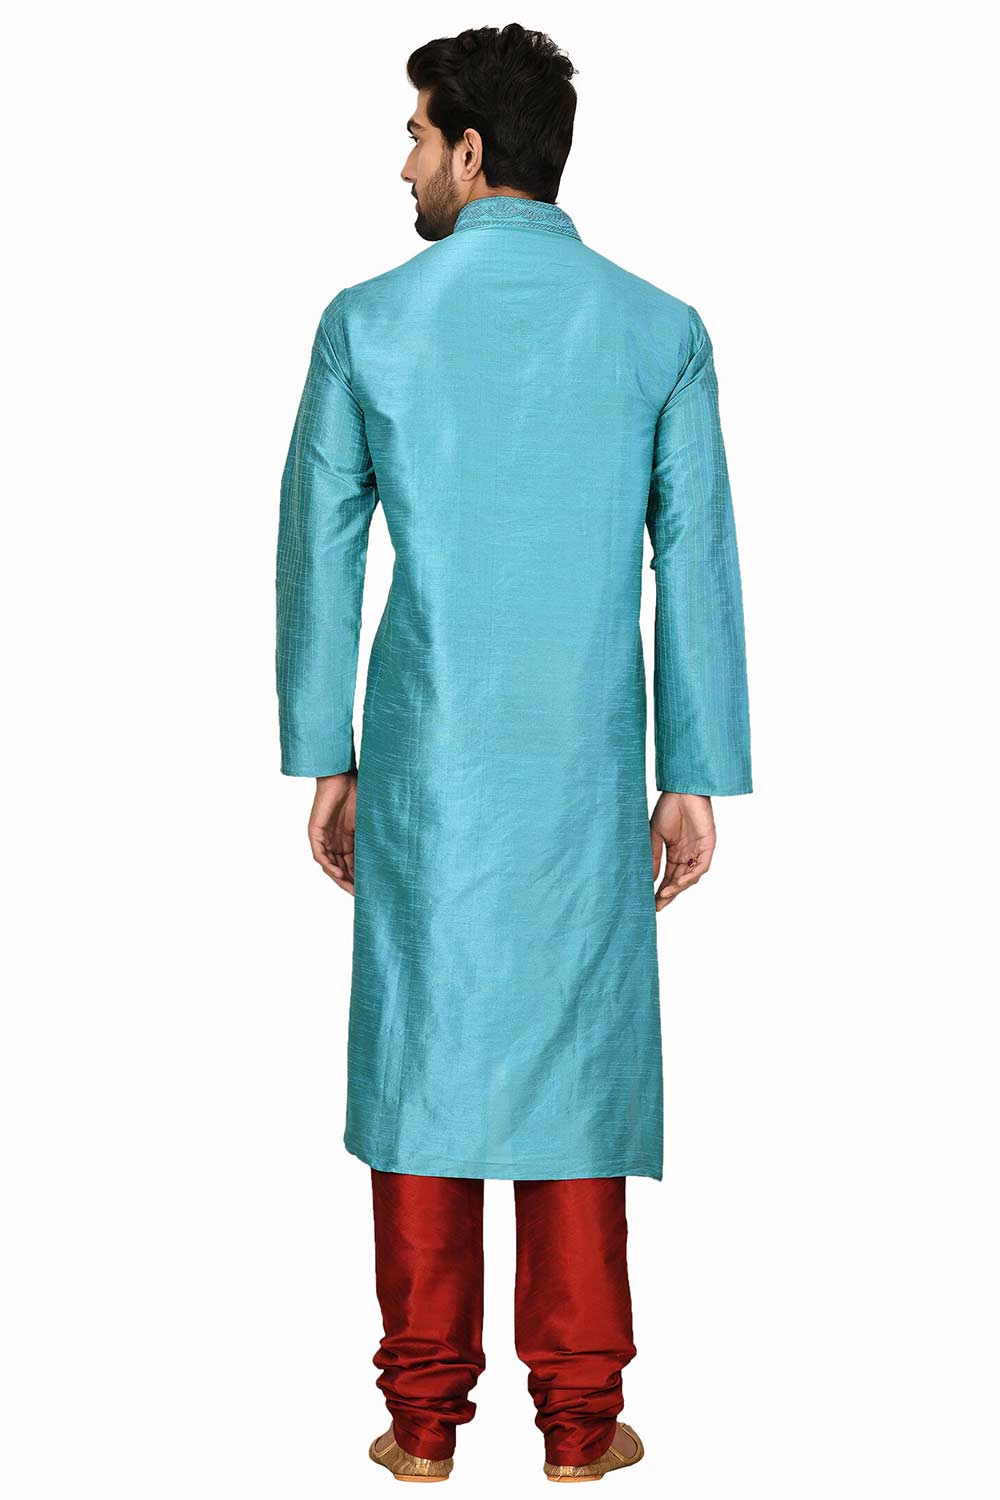 Men's Turquoise Cotton Embroidered Full Sleeve Kurta Churidar